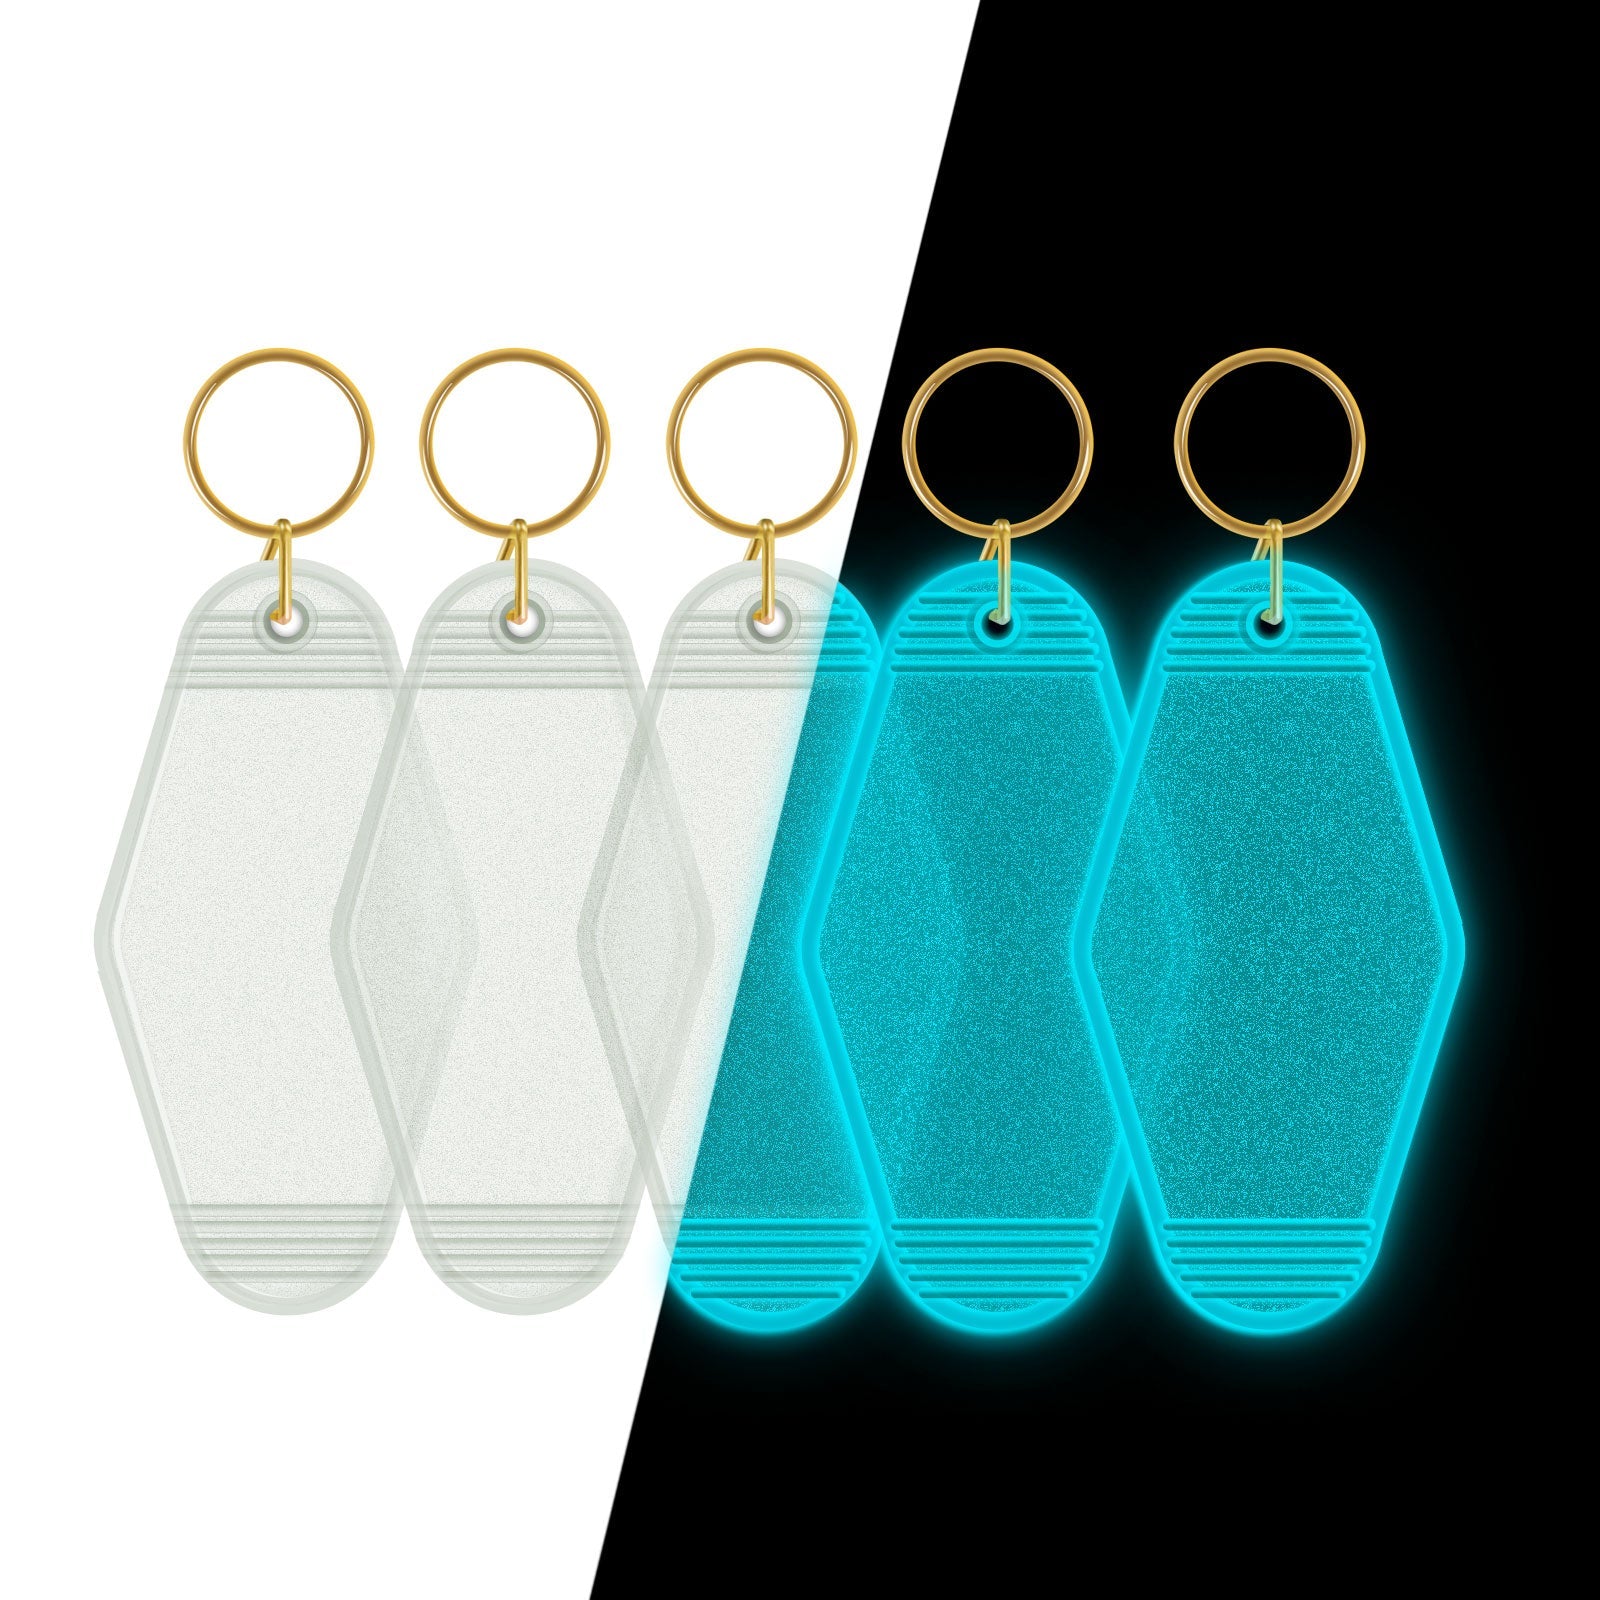 Glow-In-The-Dark Keychain Blanks